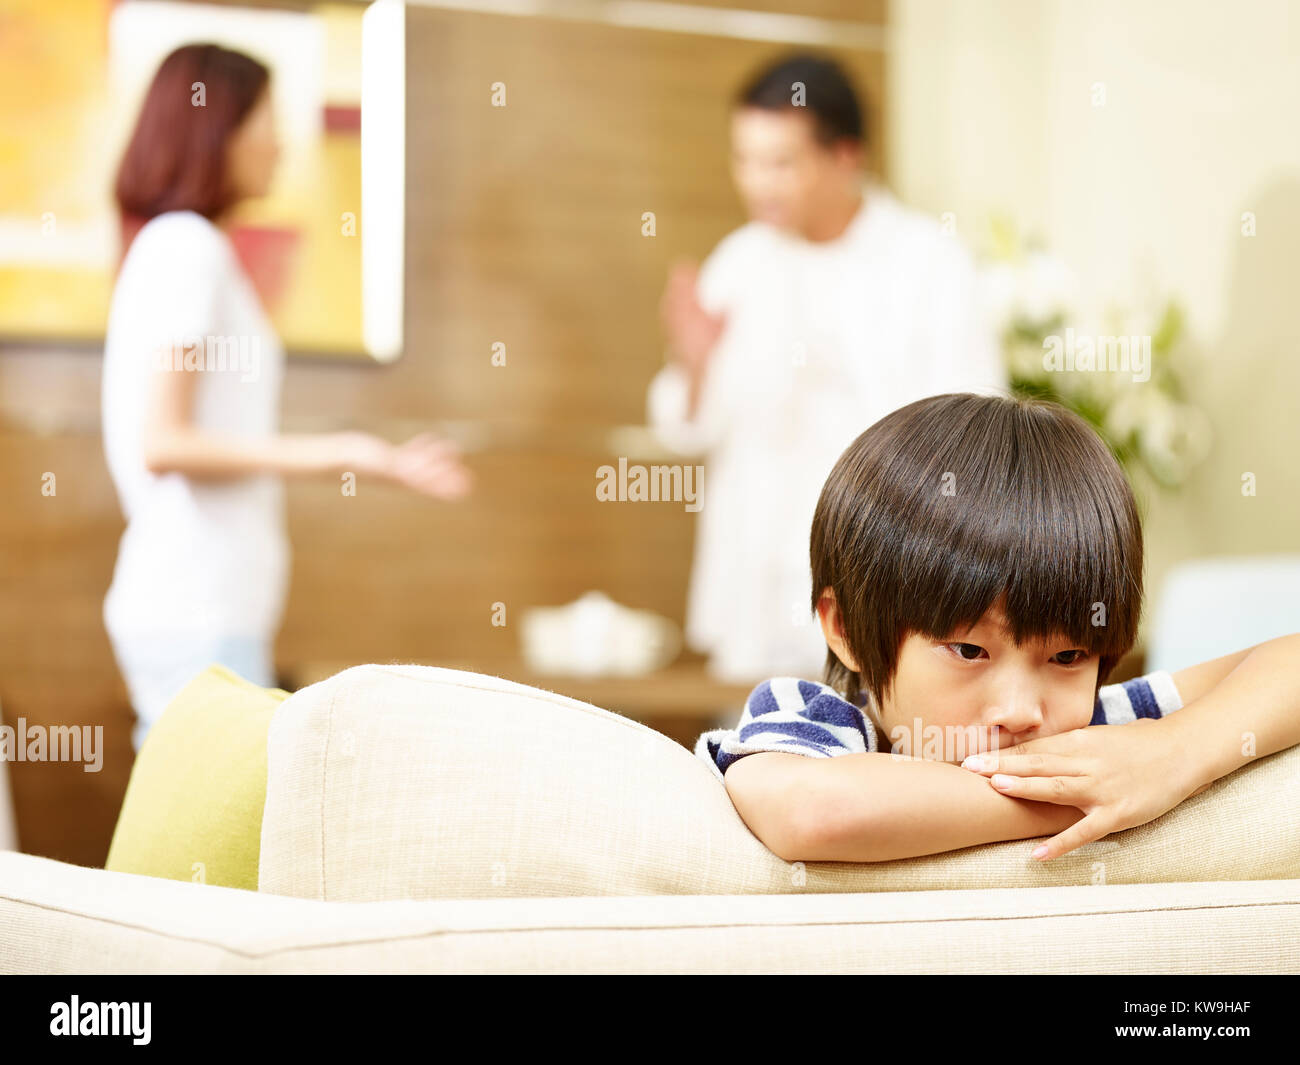 Asiatische Kind scheint traurig und unglücklich, während sich die Eltern streiten im Hintergrund. Stockfoto